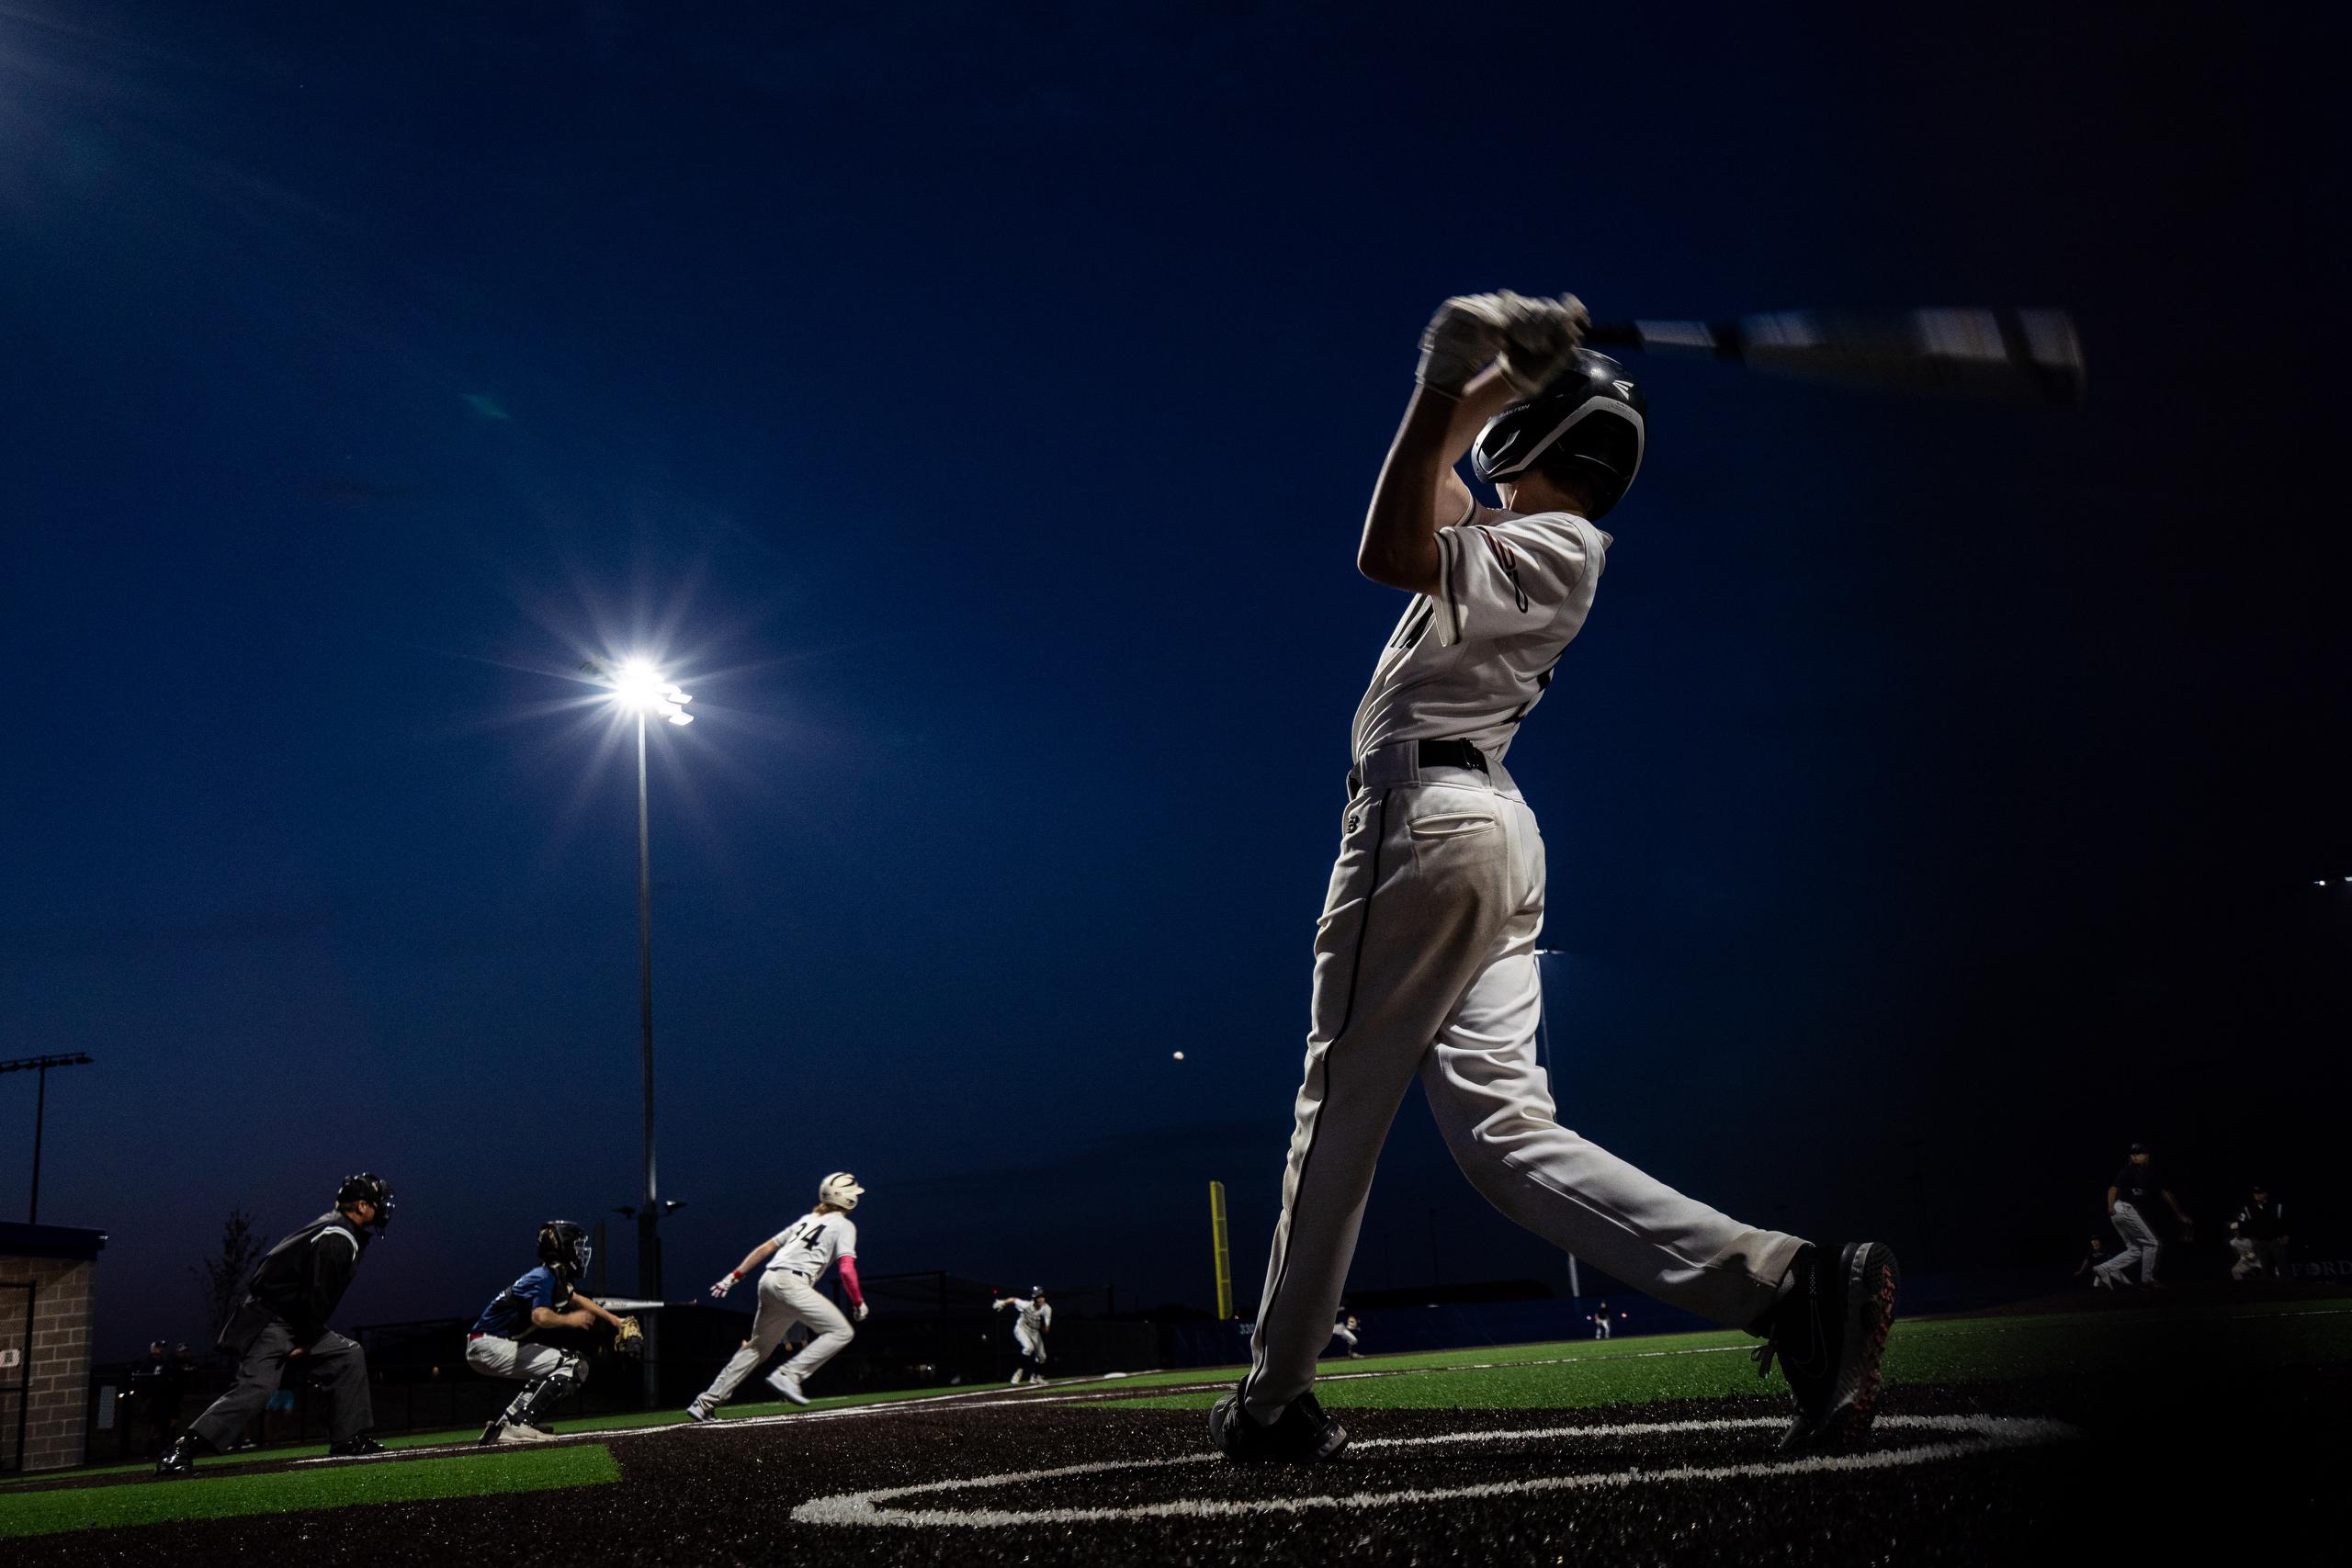 Baseball player hitting ball at night